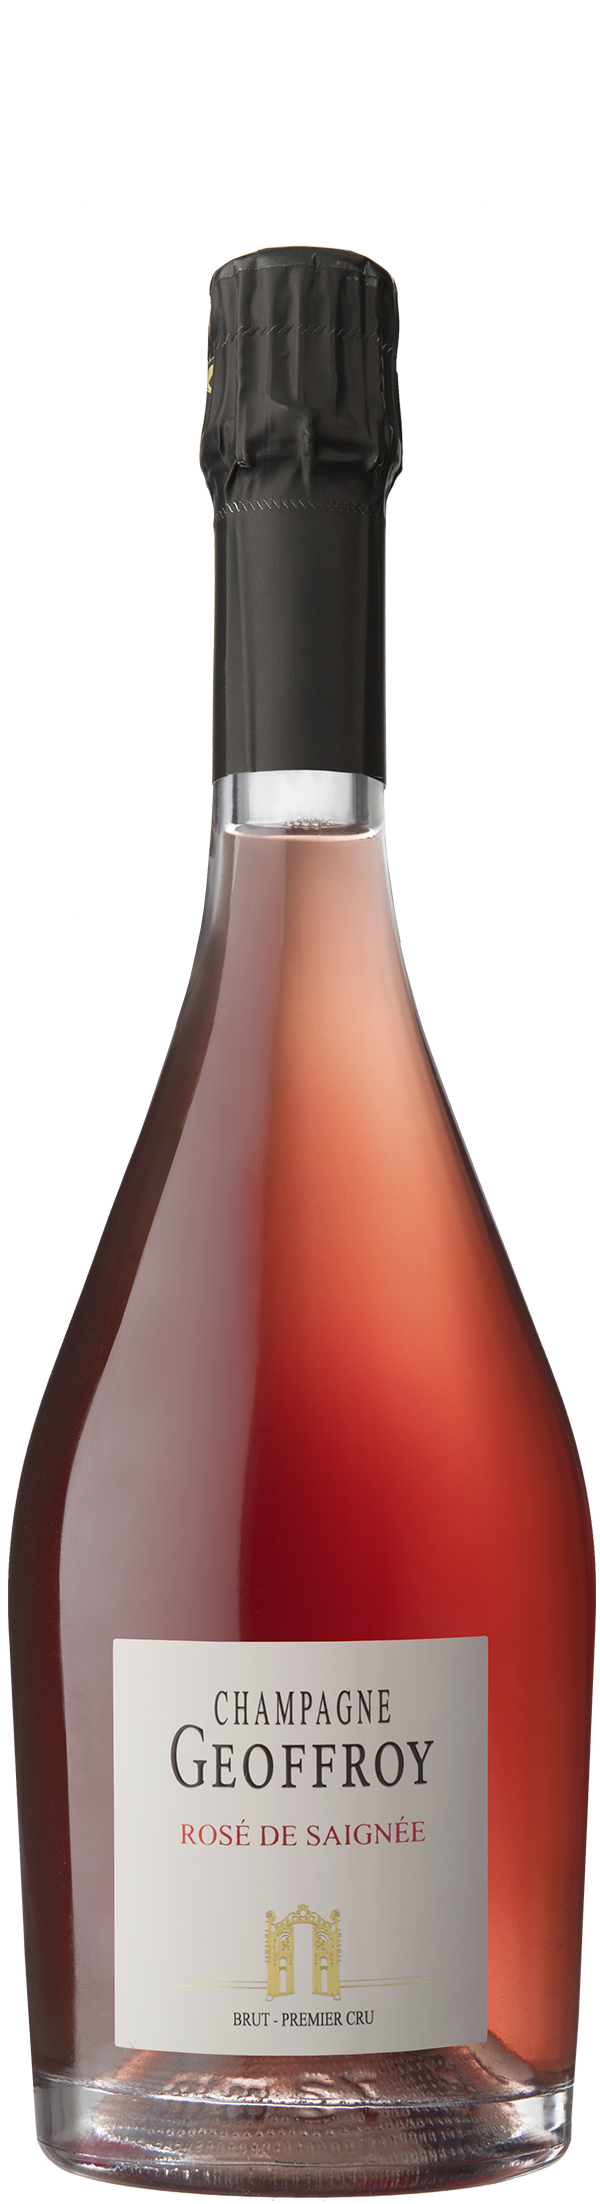 Champagne Geoffroy - Rosé de Saignée